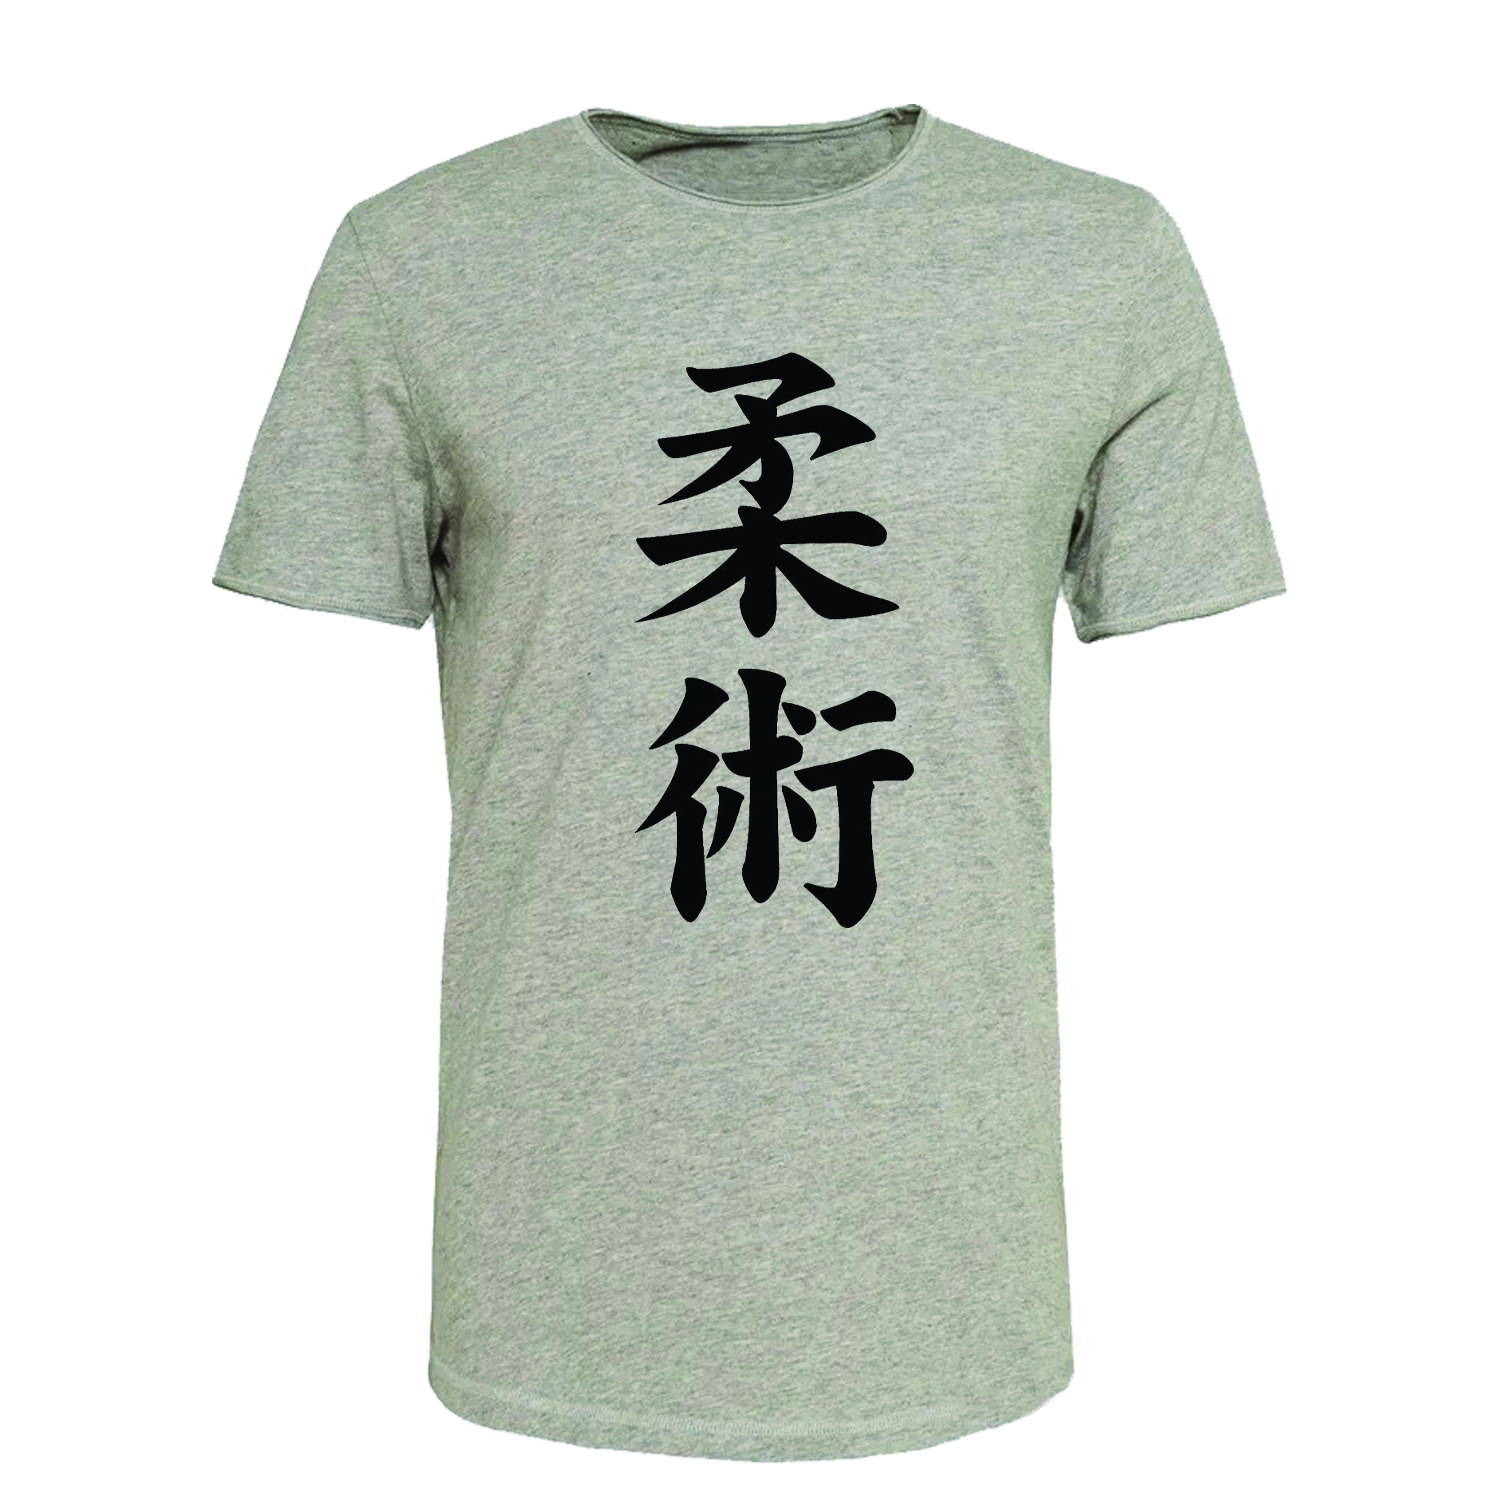 تی شرت آستین کوتاه زنانه مدل T378 طرح چینی